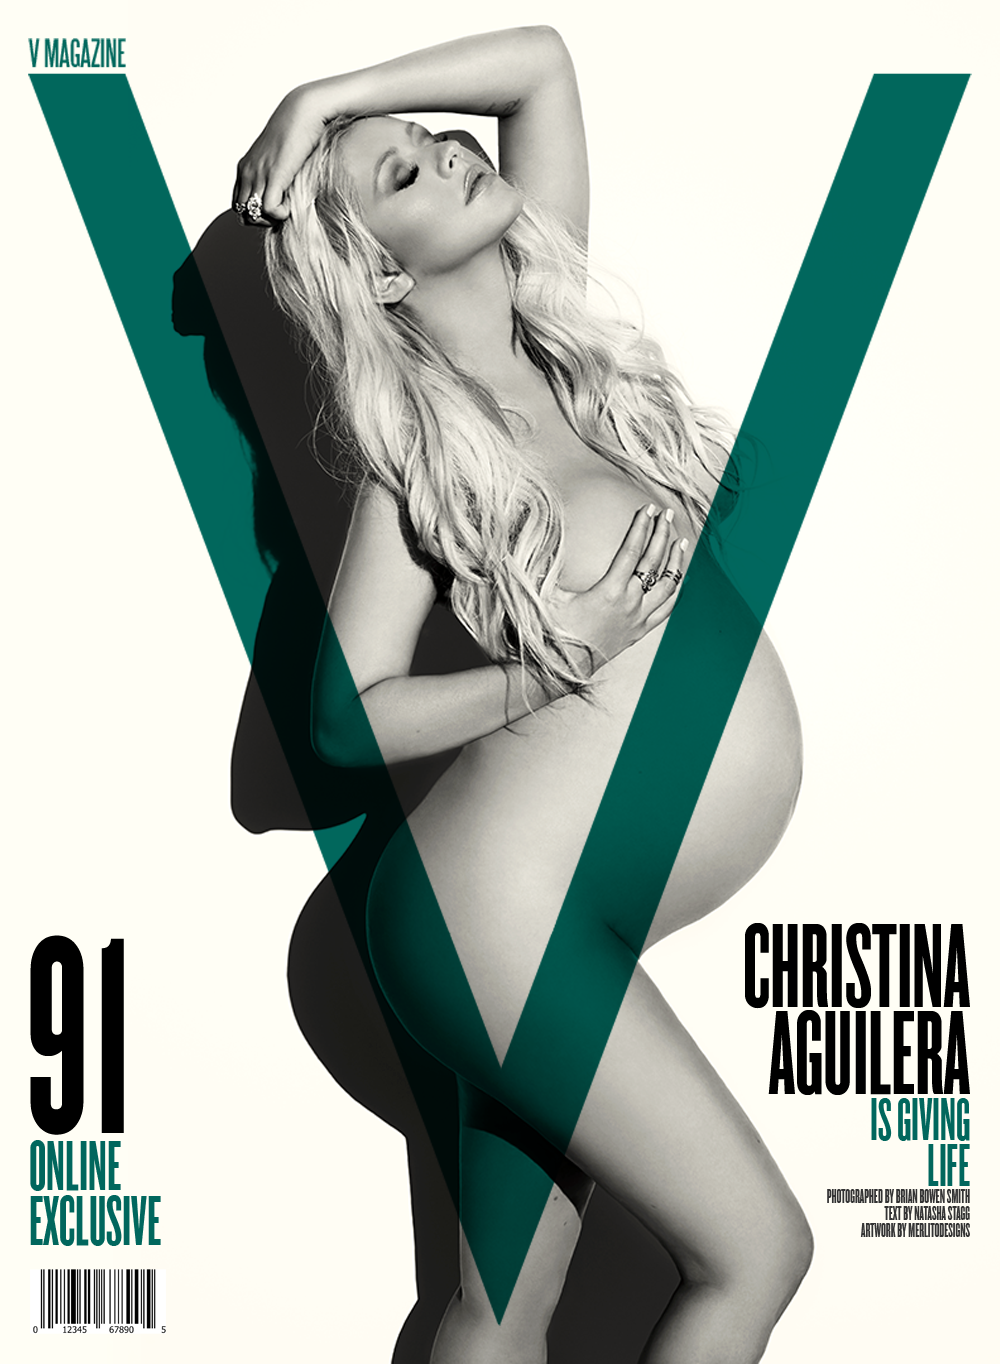 v magazine Christina Aguilera xtina Magazine Cover fashion magazine MerlitoDesigns Merlito Designs